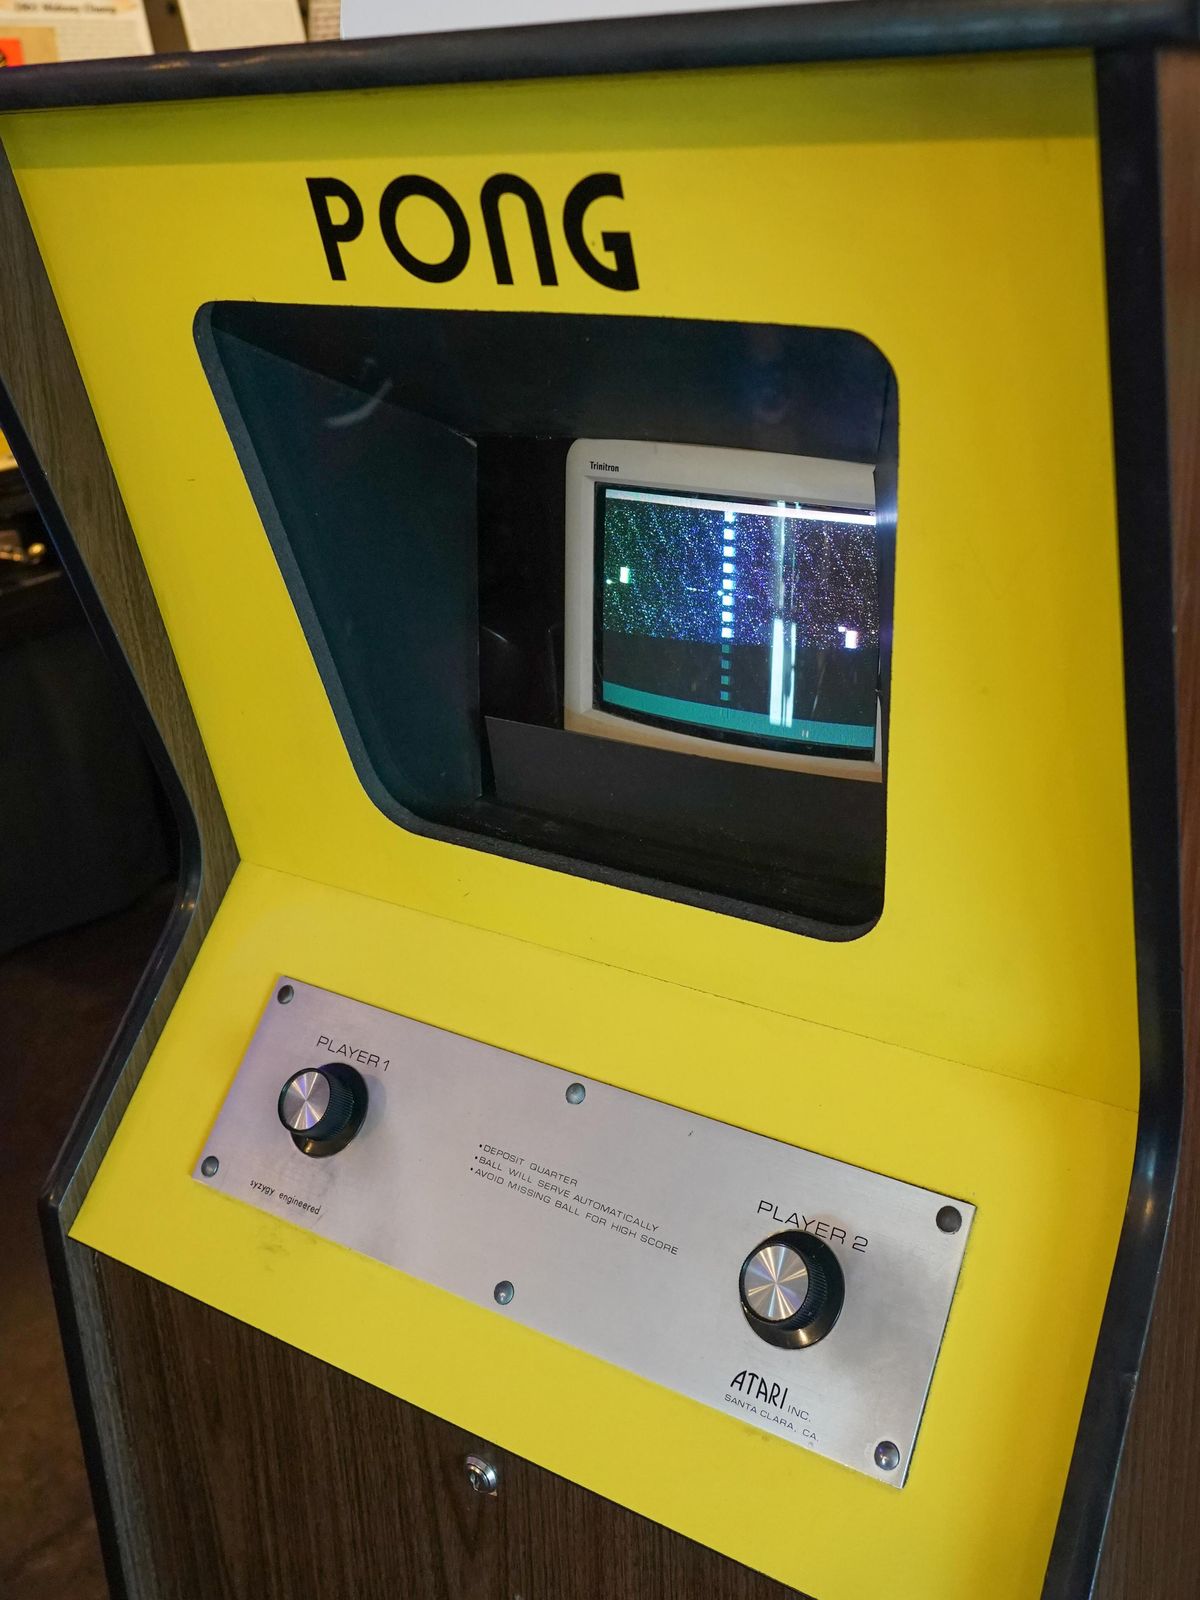 Pong街机游戏在黄色的柜子里装有黑白电视显示屏，两个旋钮上分别标注着玩家1和玩家2，可见雅达利的标志。